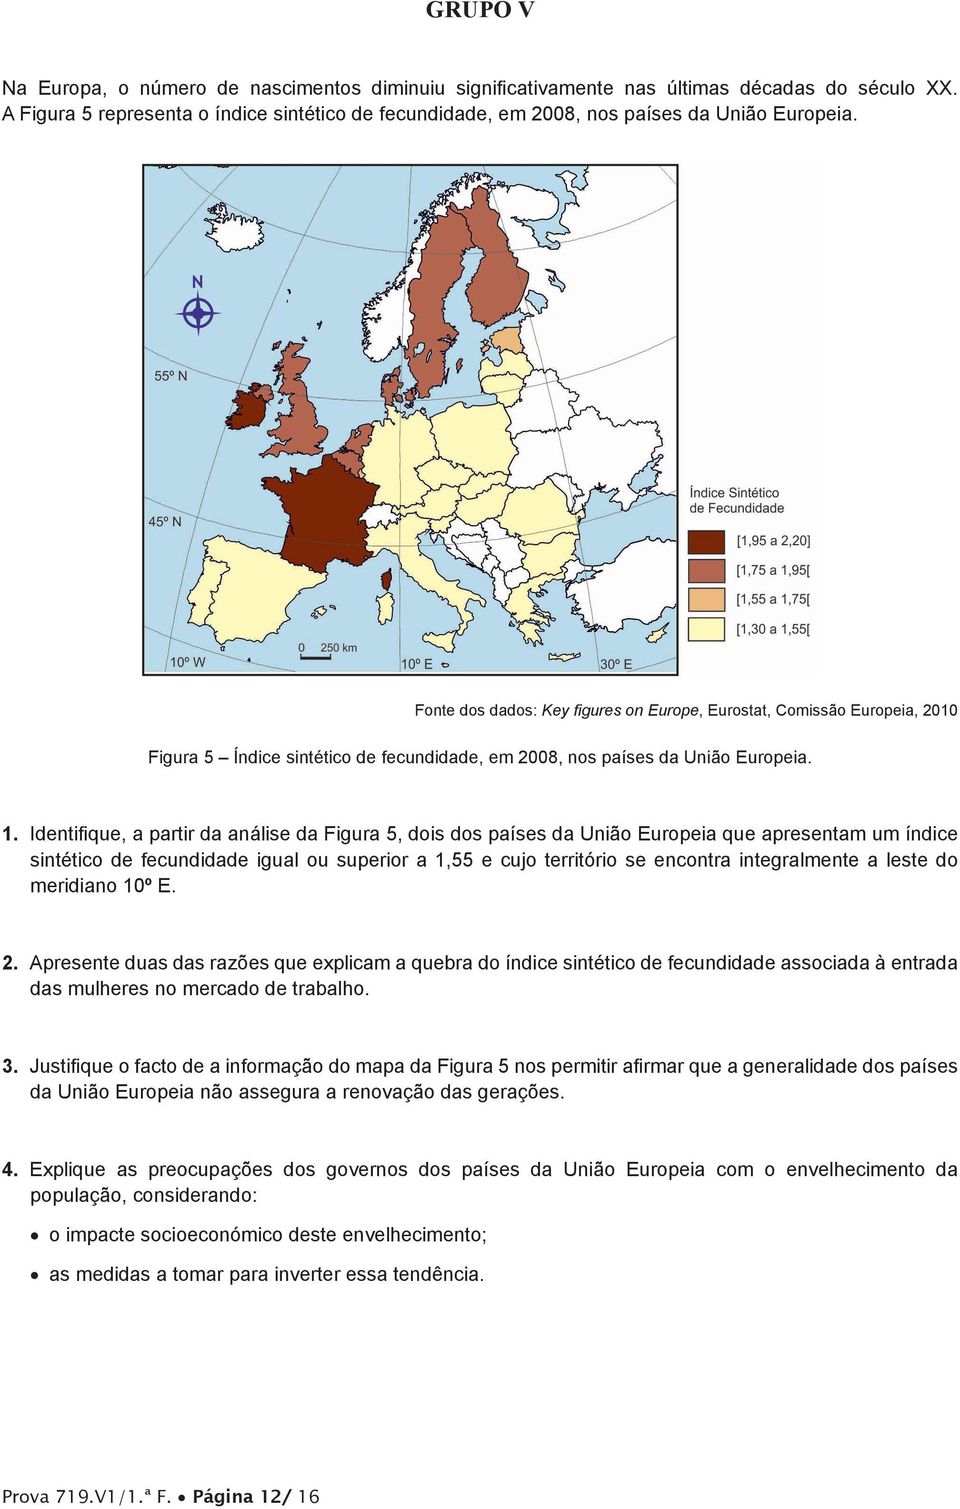 Identifique, a partir da análise da Figura 5, dois dos países da União Europeia que apresentam um índice sintético de fecundidade igual ou superior a 1,55 e cujo território se encontra integralmente